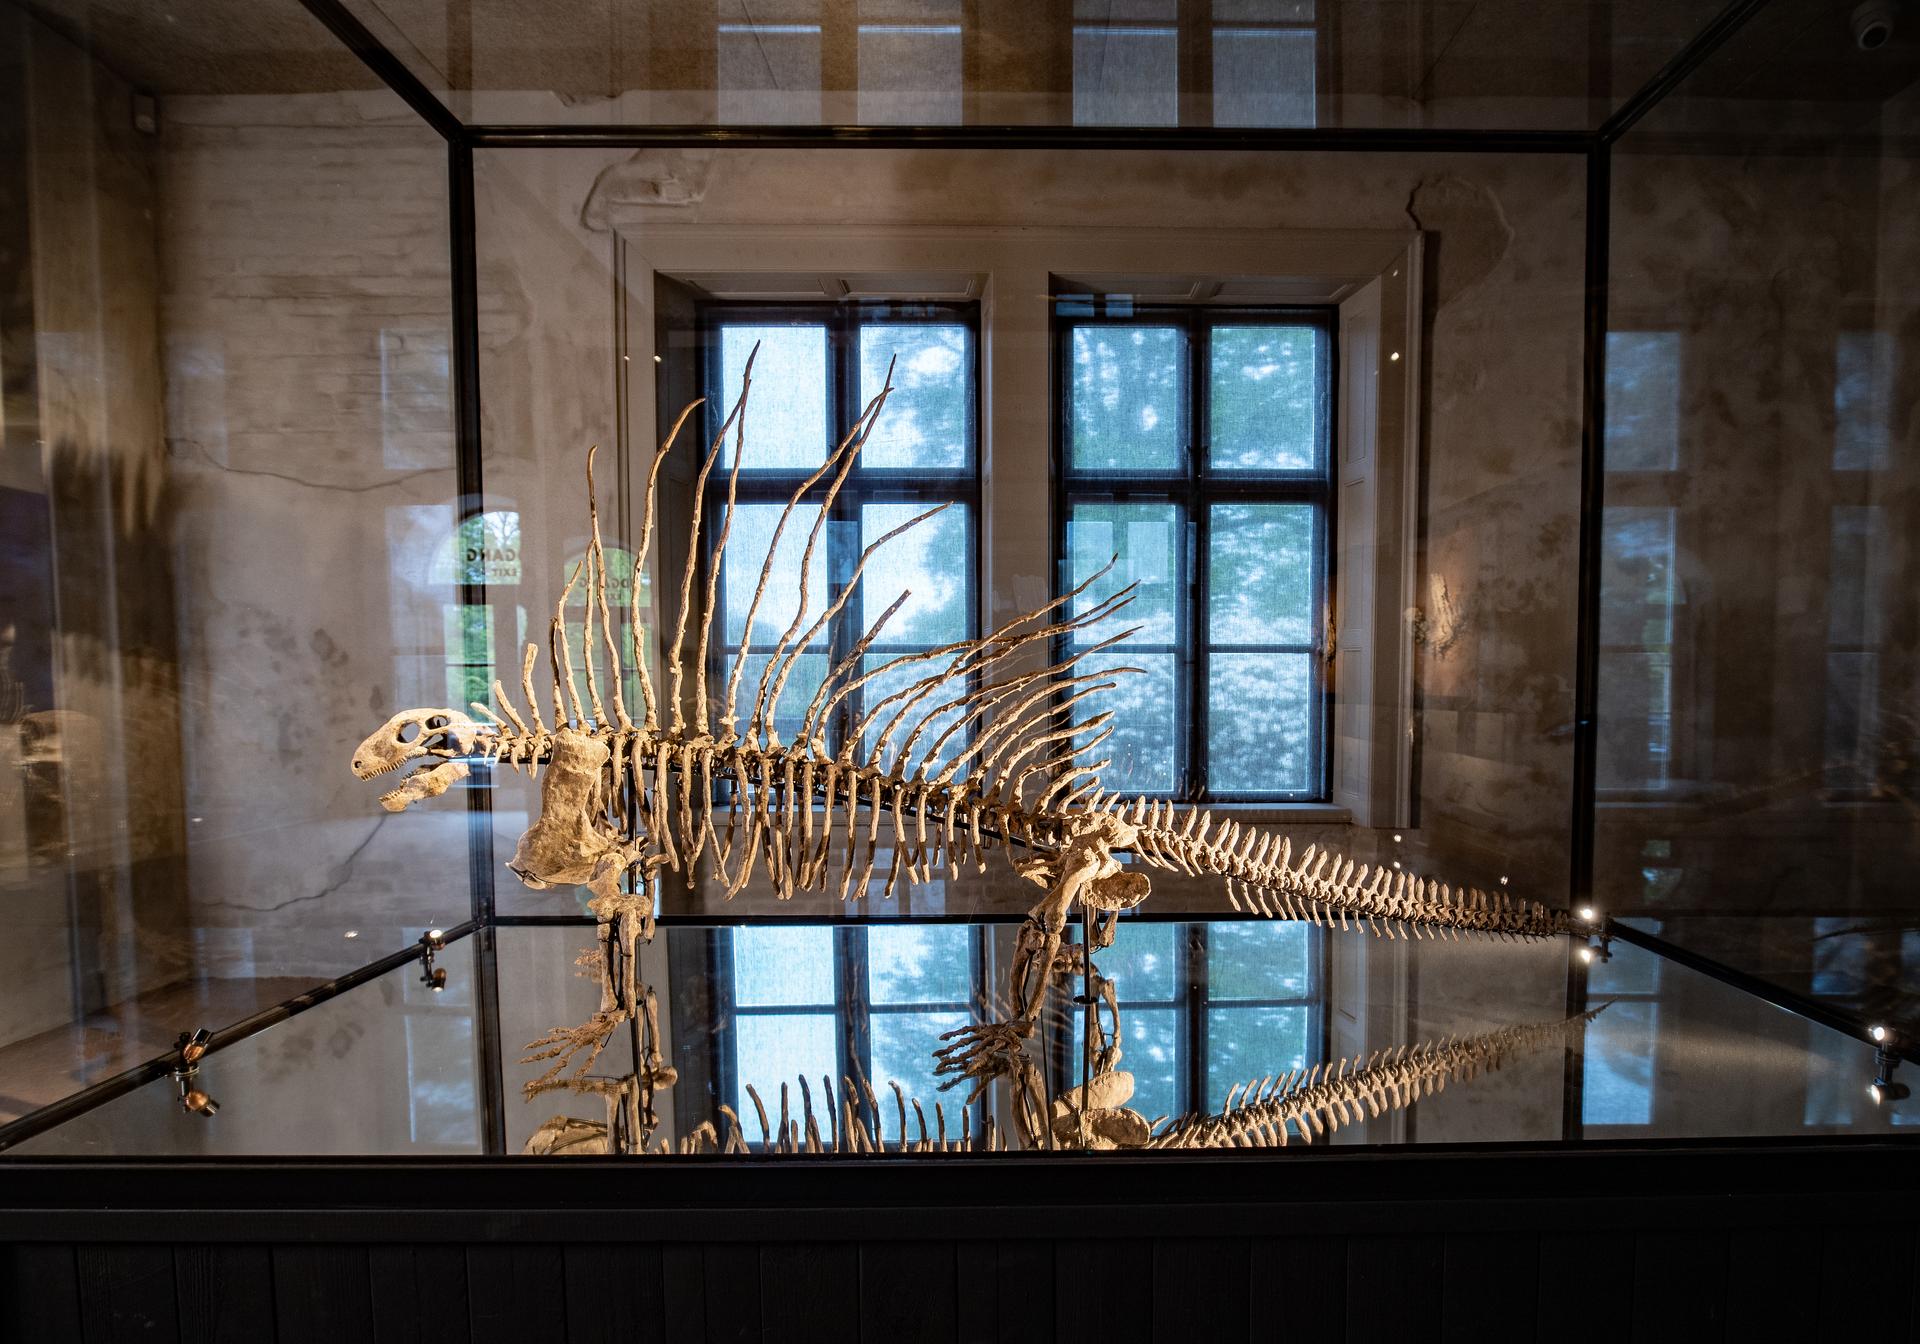 Edaphosaurus on display